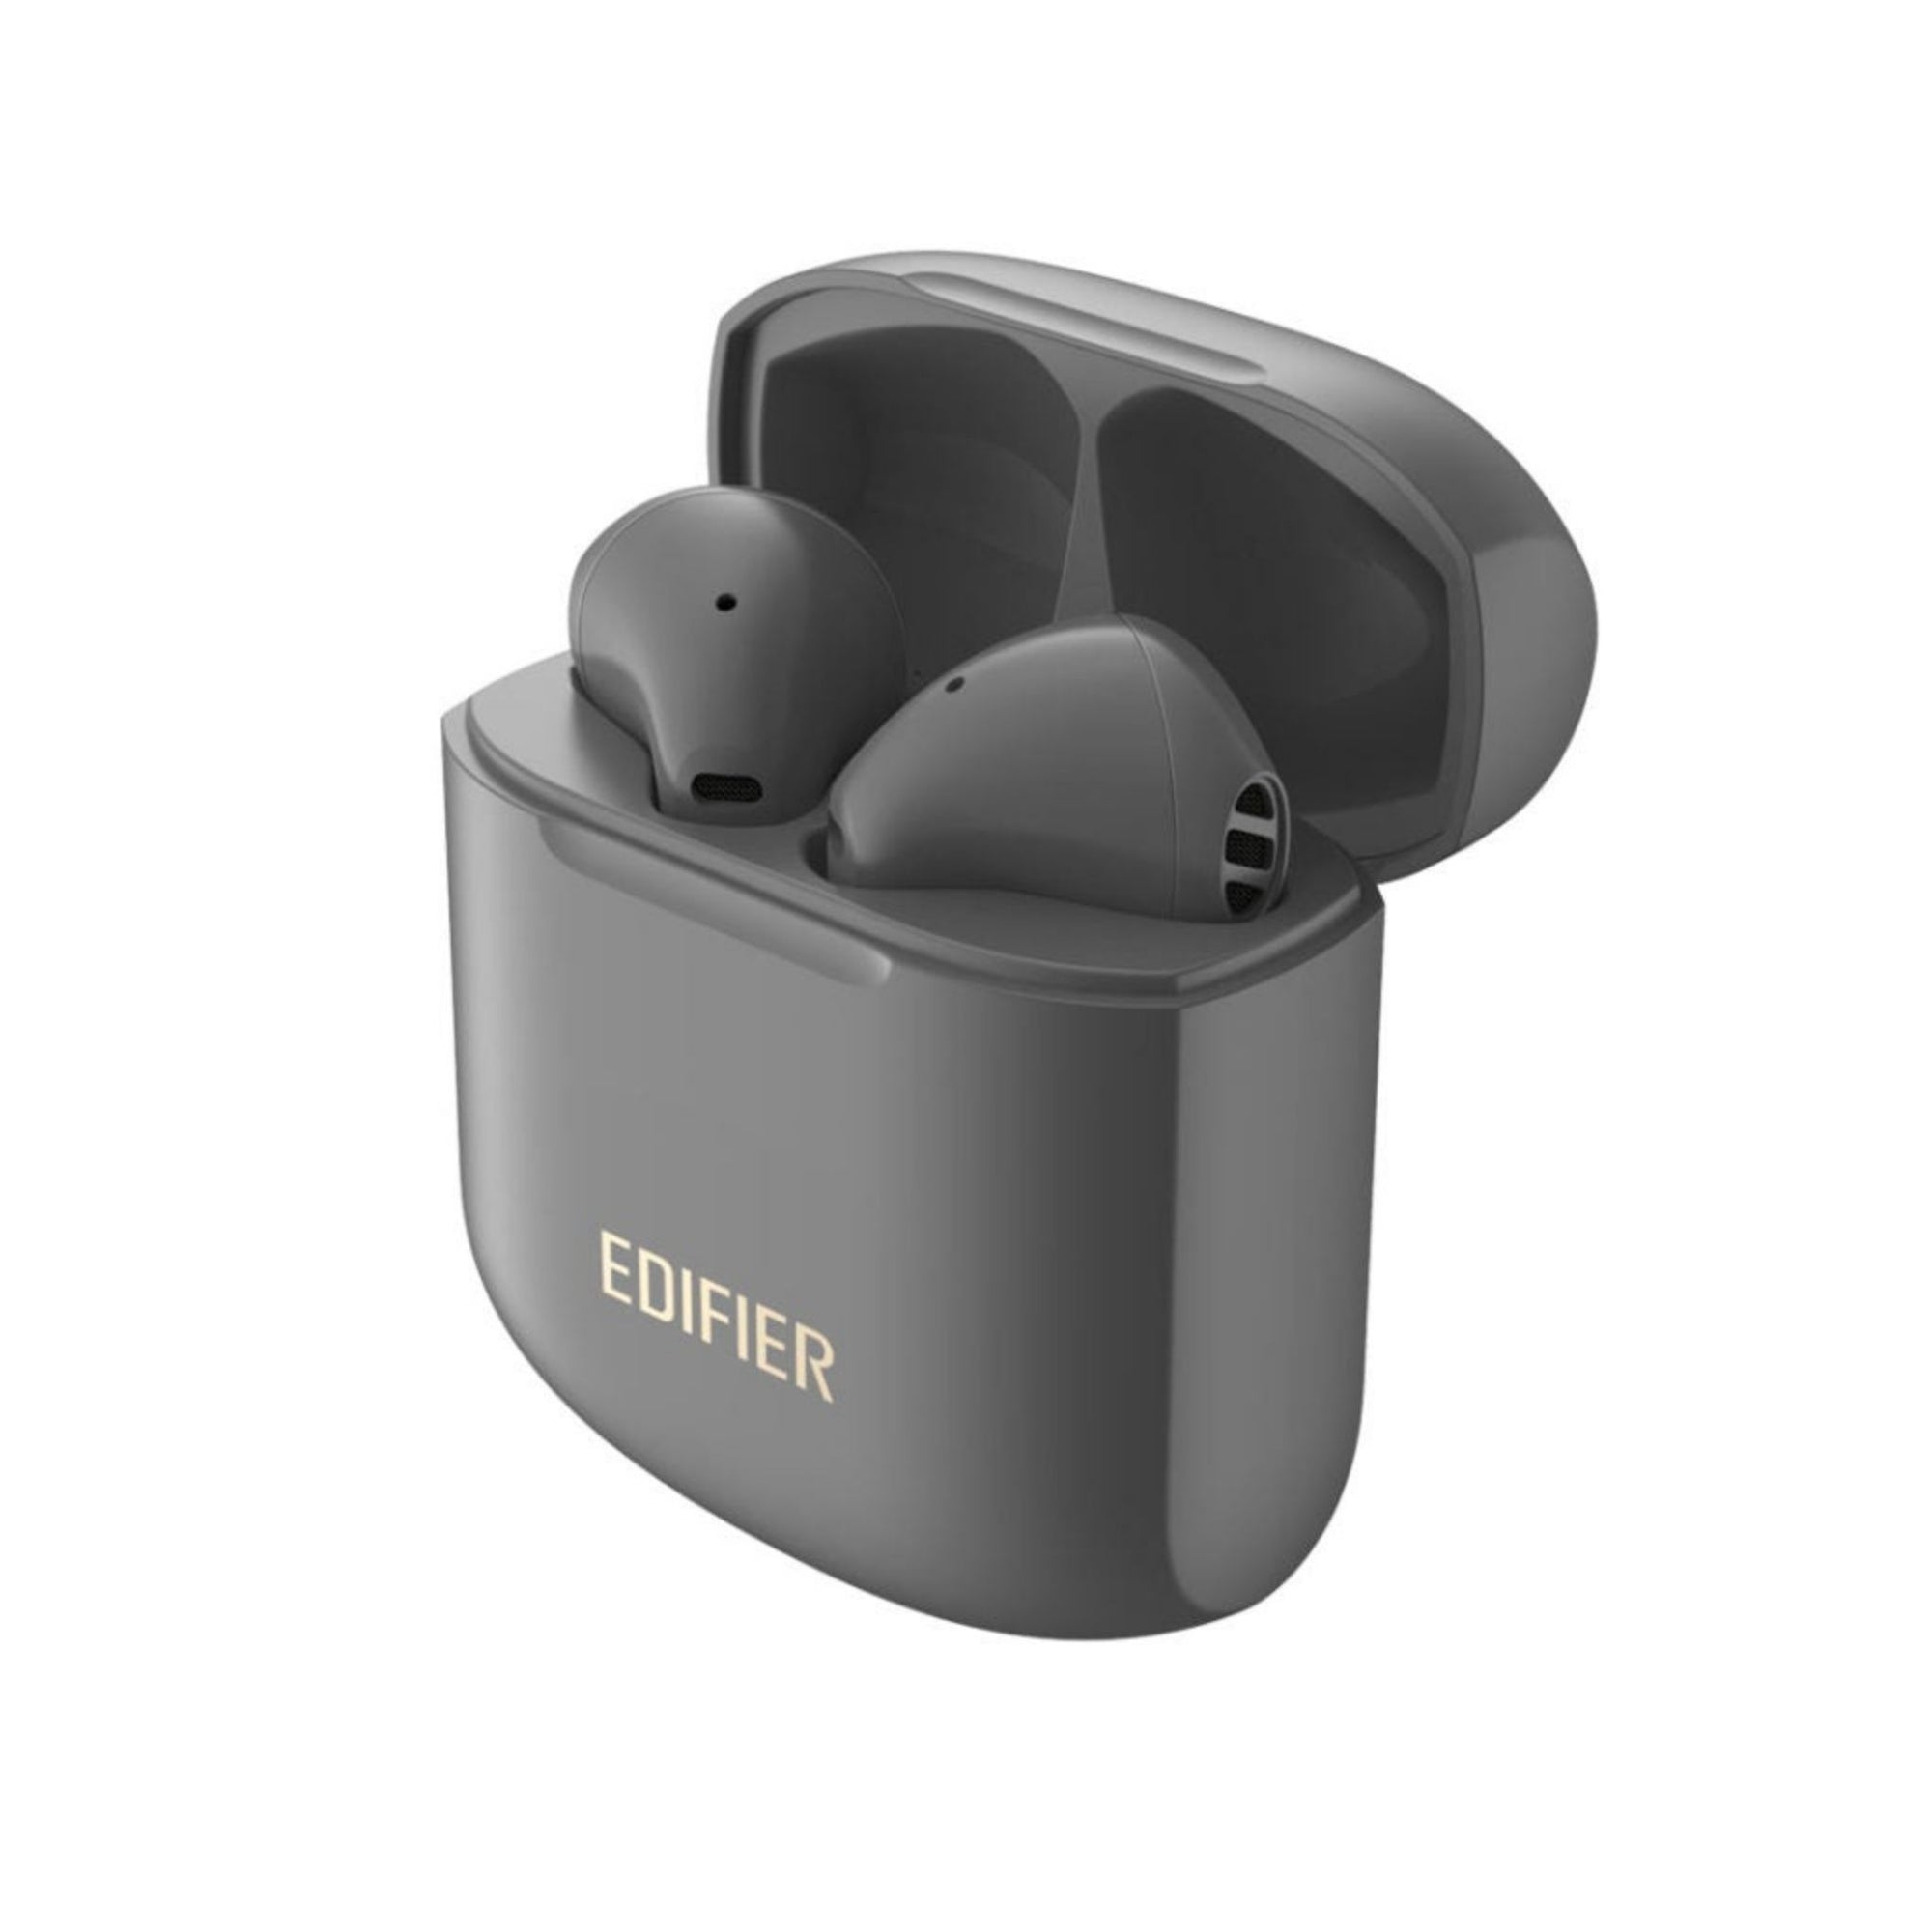 Edifier TWS200 Plus Earbuds